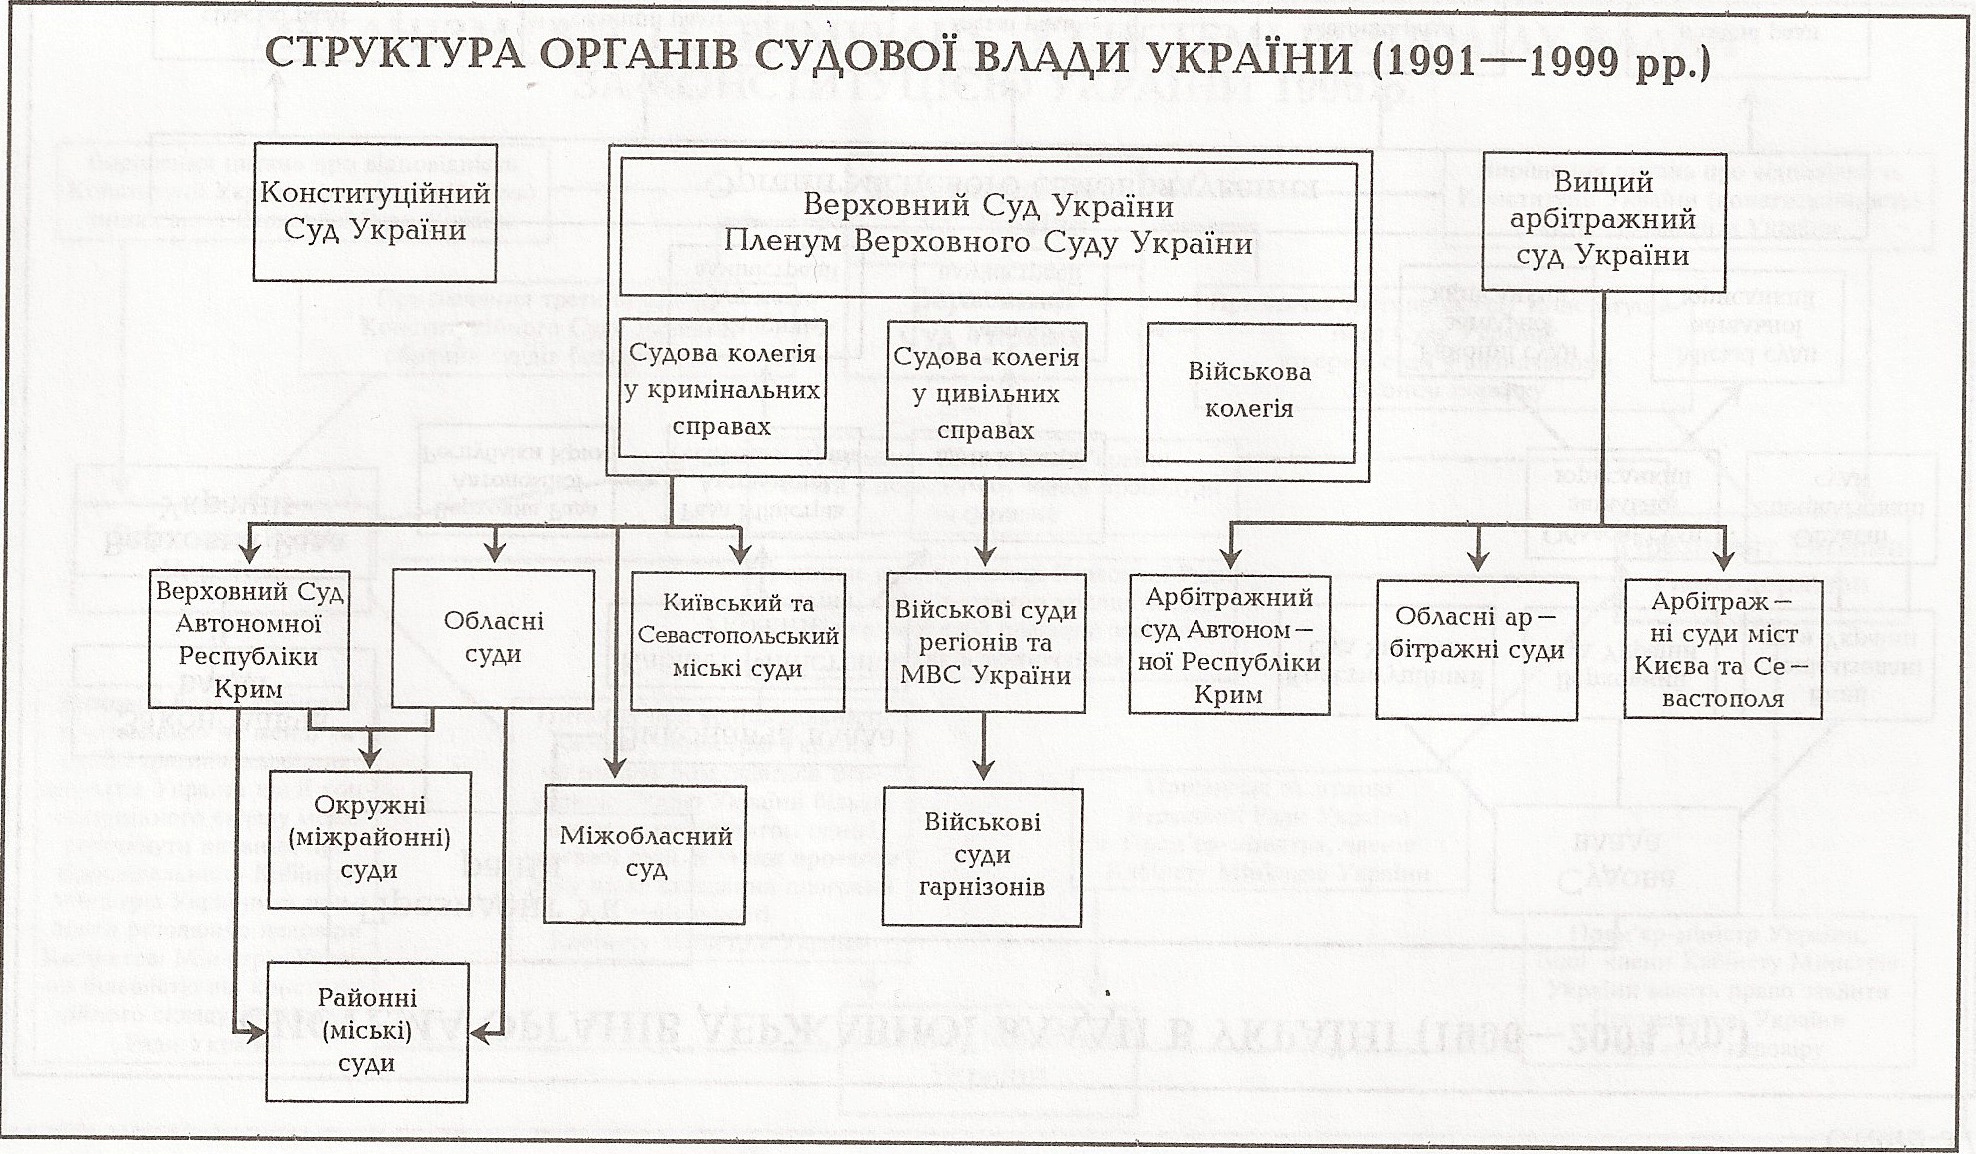 Таблица: Структура органов судебной власти Украины (1991 - 1999 гг.)